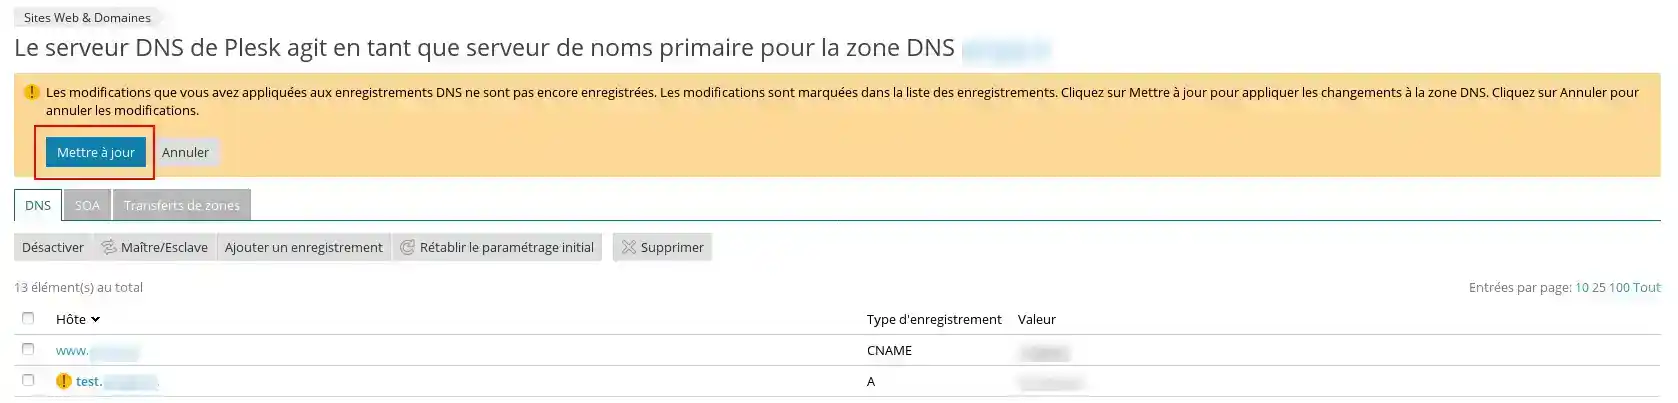 Comment modifier la zone DNS Mail sous Plesk ?